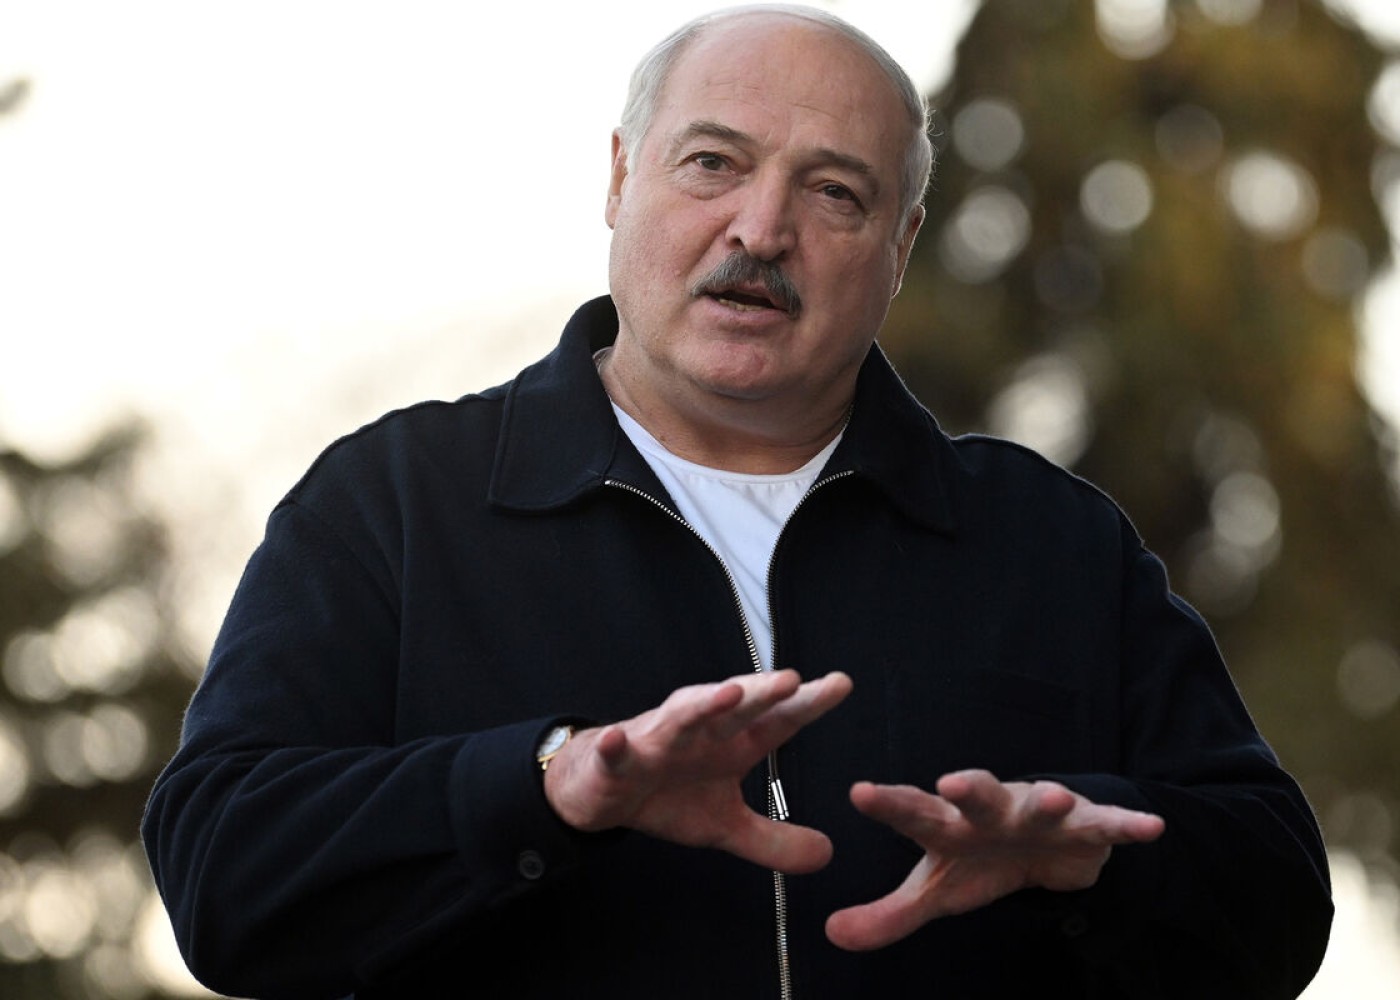 "Dollar və avro lazımsızdır" -Lukaşenko